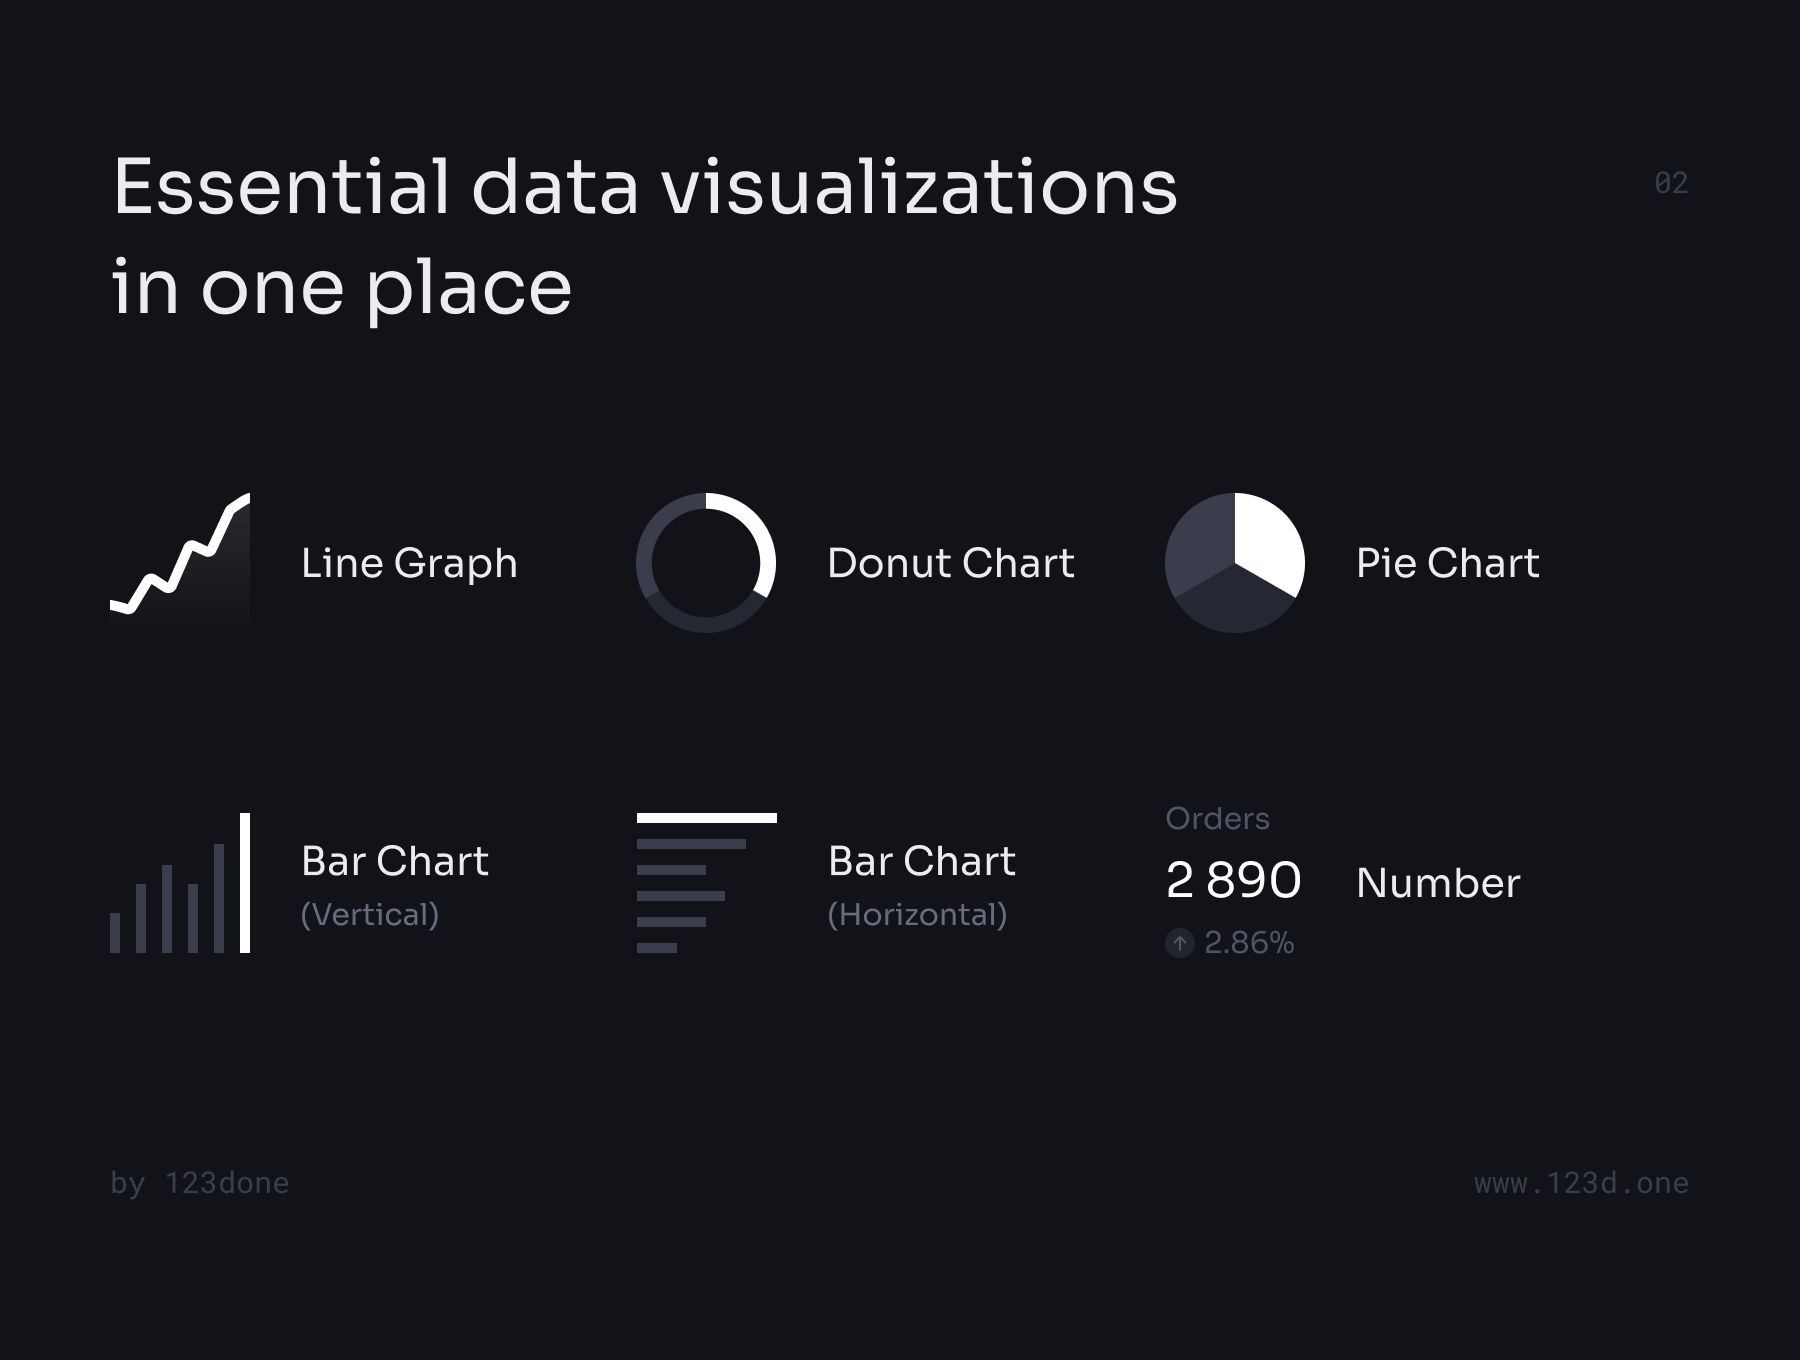 1178 数据可视化信息图表网页设计ui组件模板 UNIVERSAL DATA VISUALIZATION